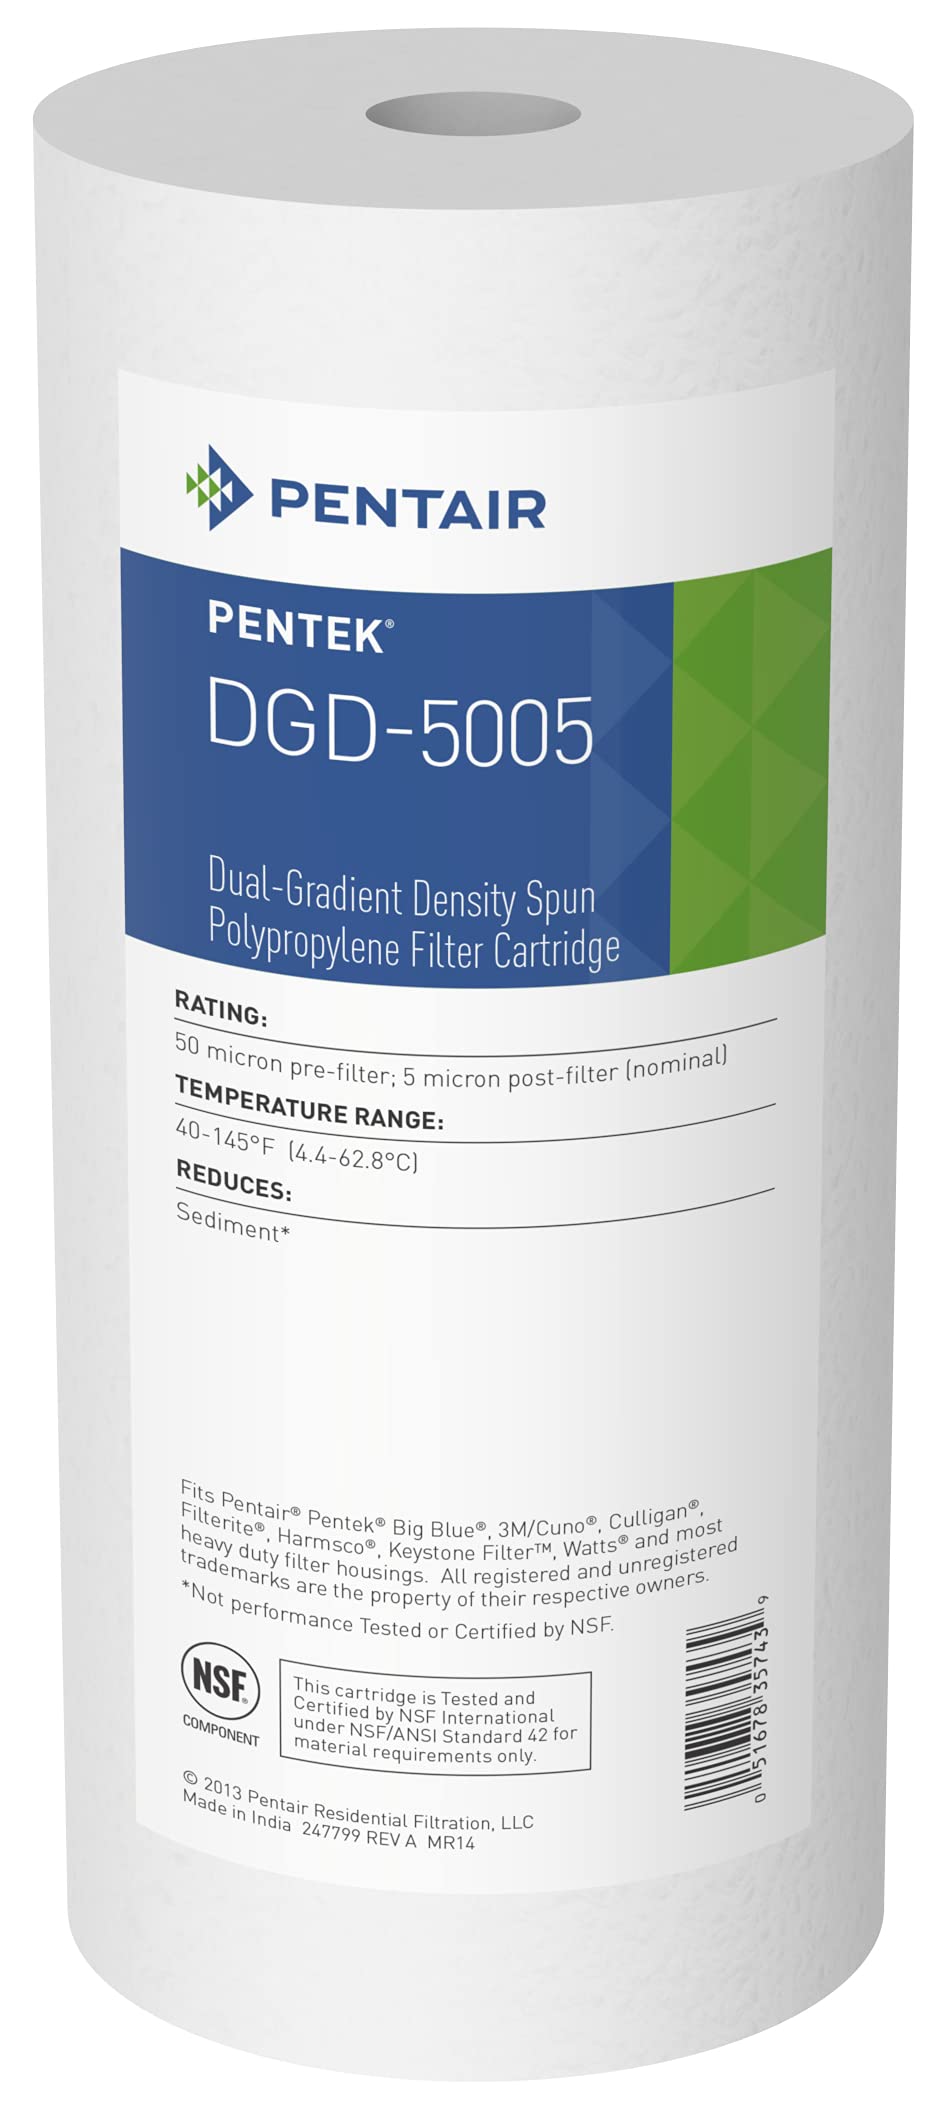 Pentair Pentek DGD-5005 Big Blue Sediment-Wasserfilter, 25,4 cm (10 Zoll), robustes Dual-Gradient, Dichte gesponnenes Polypropylen, Ersatzfilterkartusche, 25,4 x 11,4 cm, 5 Mikron